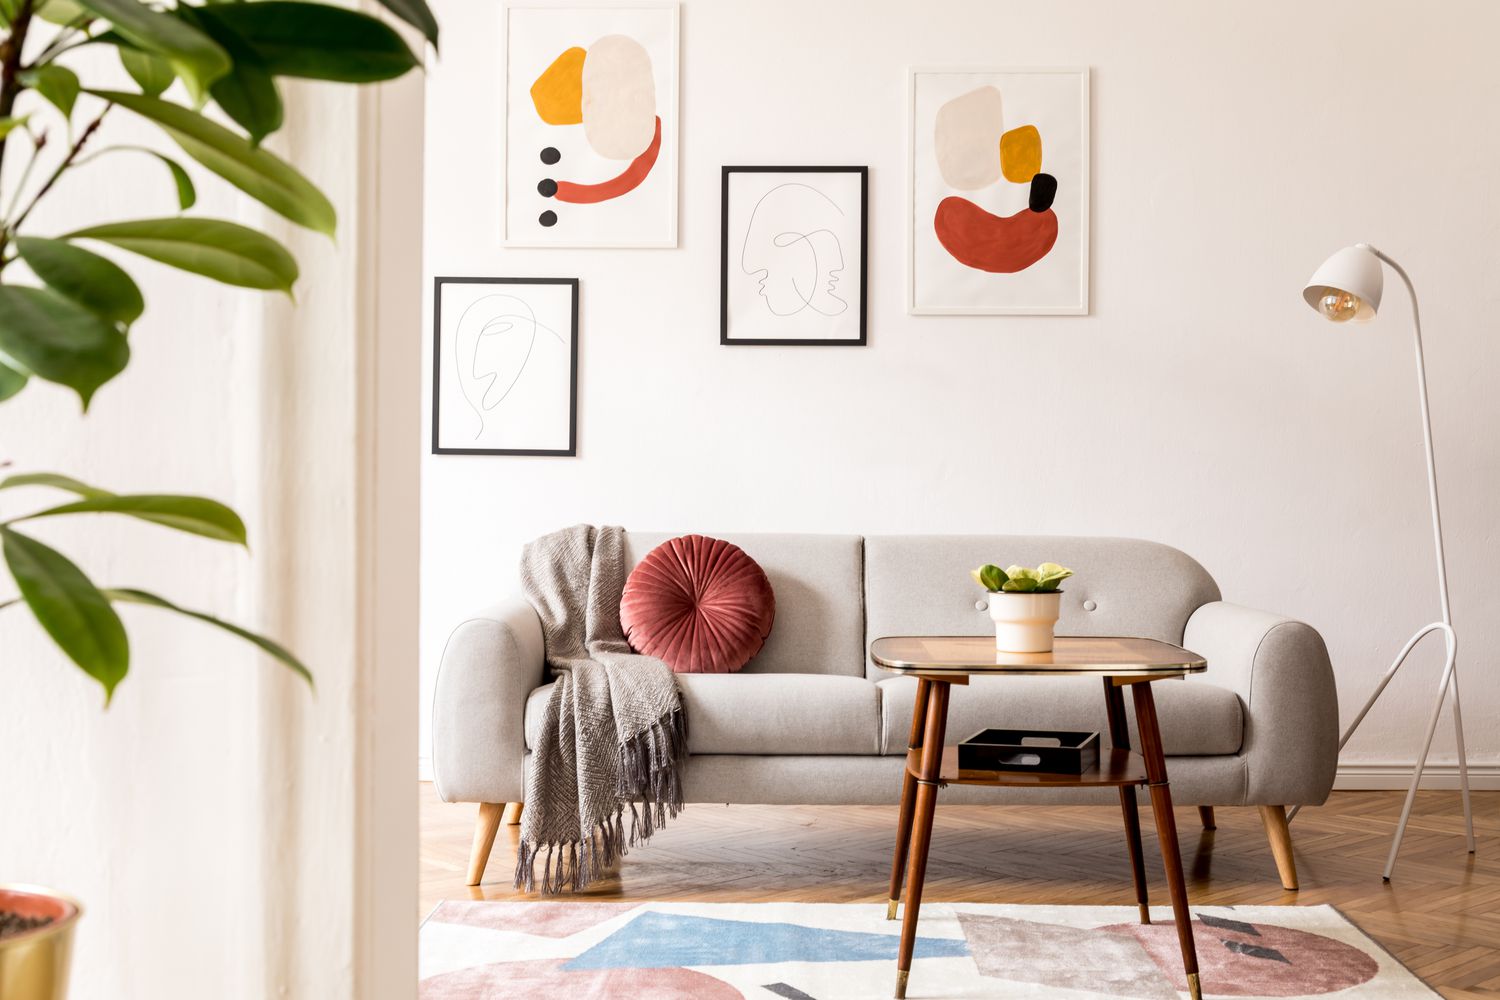 Uma sala de estar branca com detalhes neutros e pinturas abstratas coloridas penduradas atrás do sofá